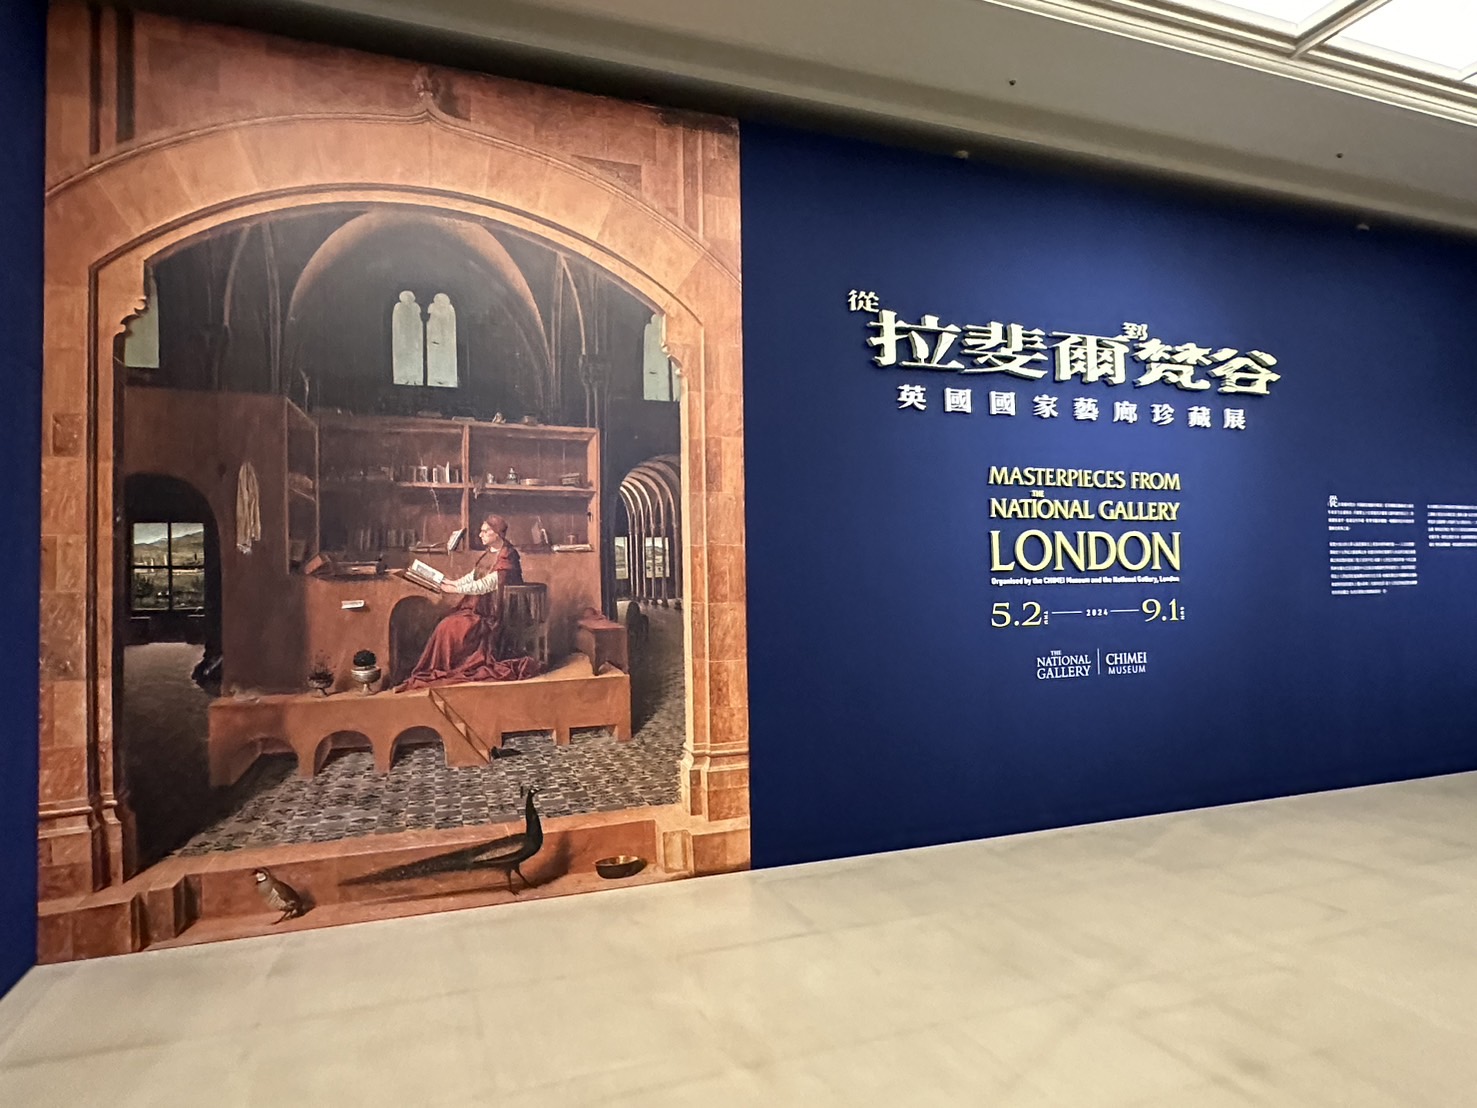 奇 美 博 物 館 《 英 國 國 家 藝 廊 珍 藏 展 》 入 口 廊 道 。 圖 / 戴 衣 薰 攝 影   